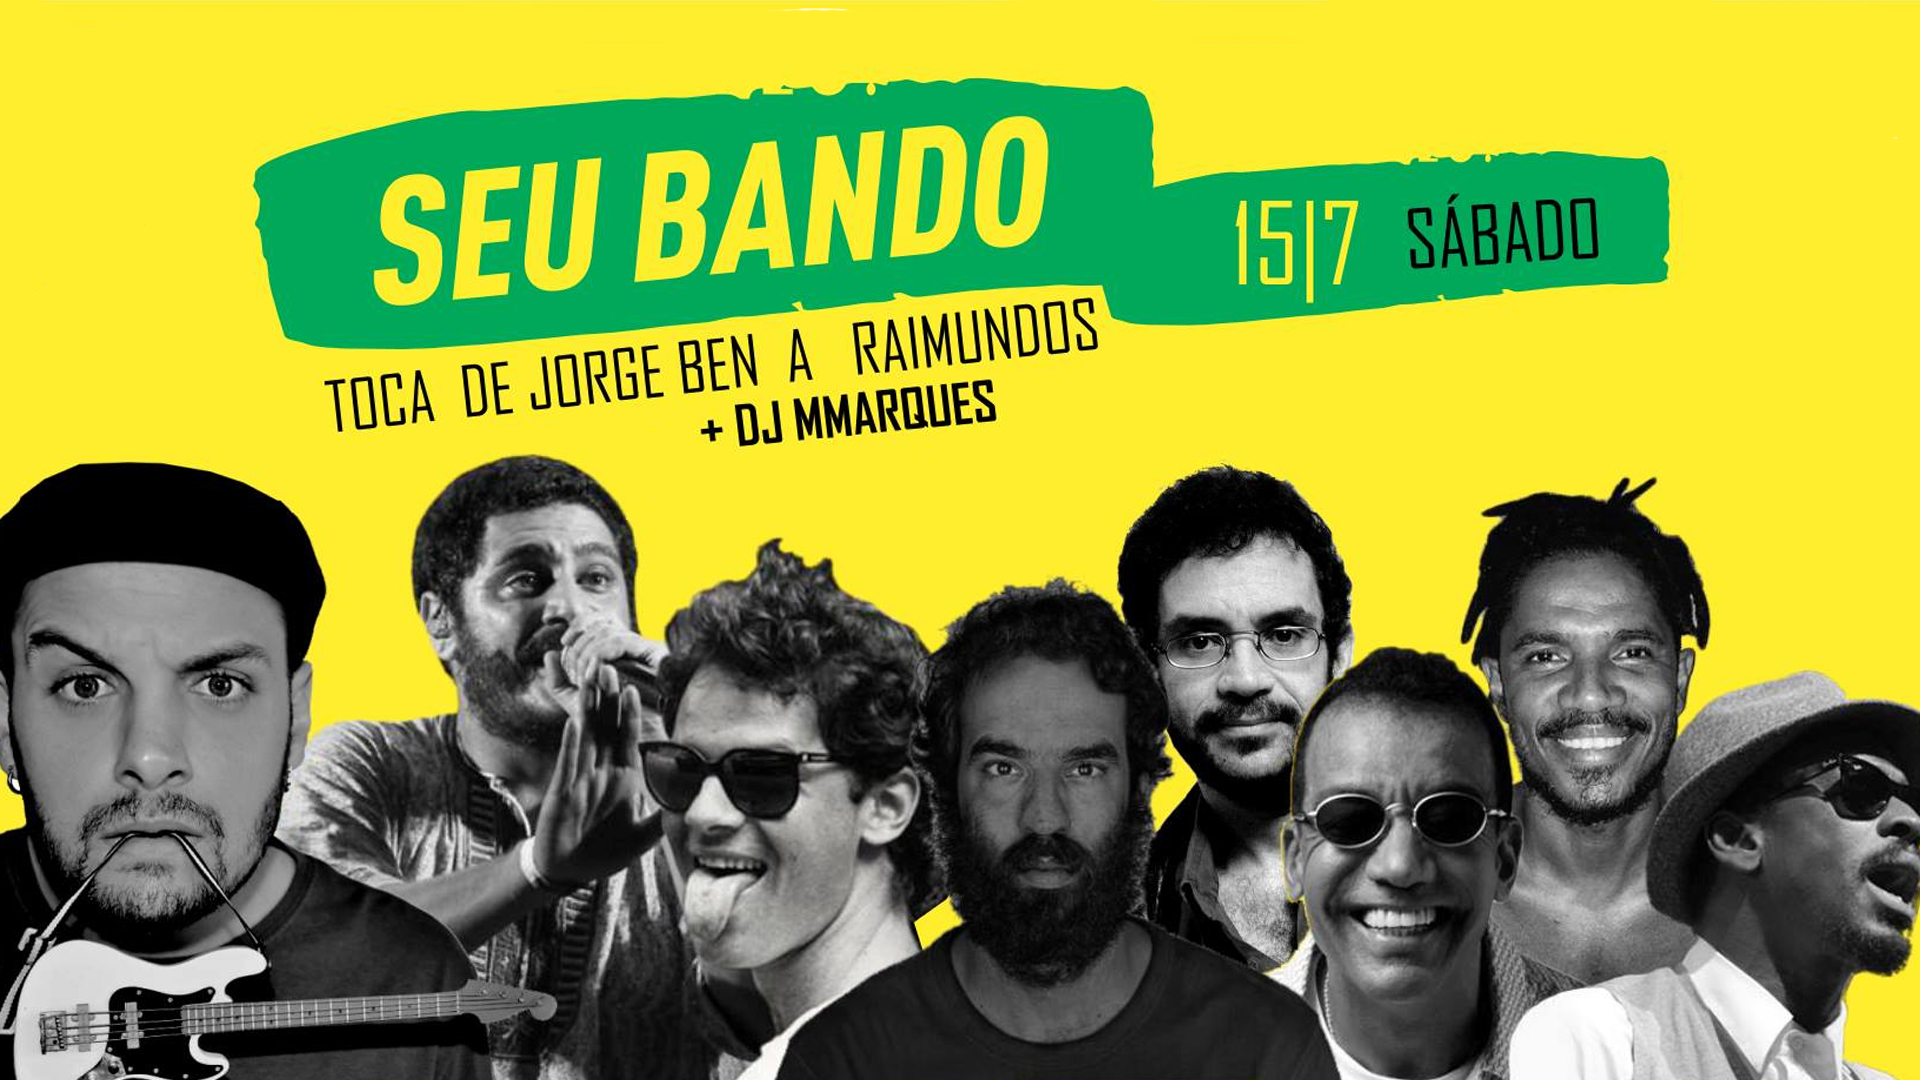 Sunday - Baile do Bando: Seu Bando + DJ